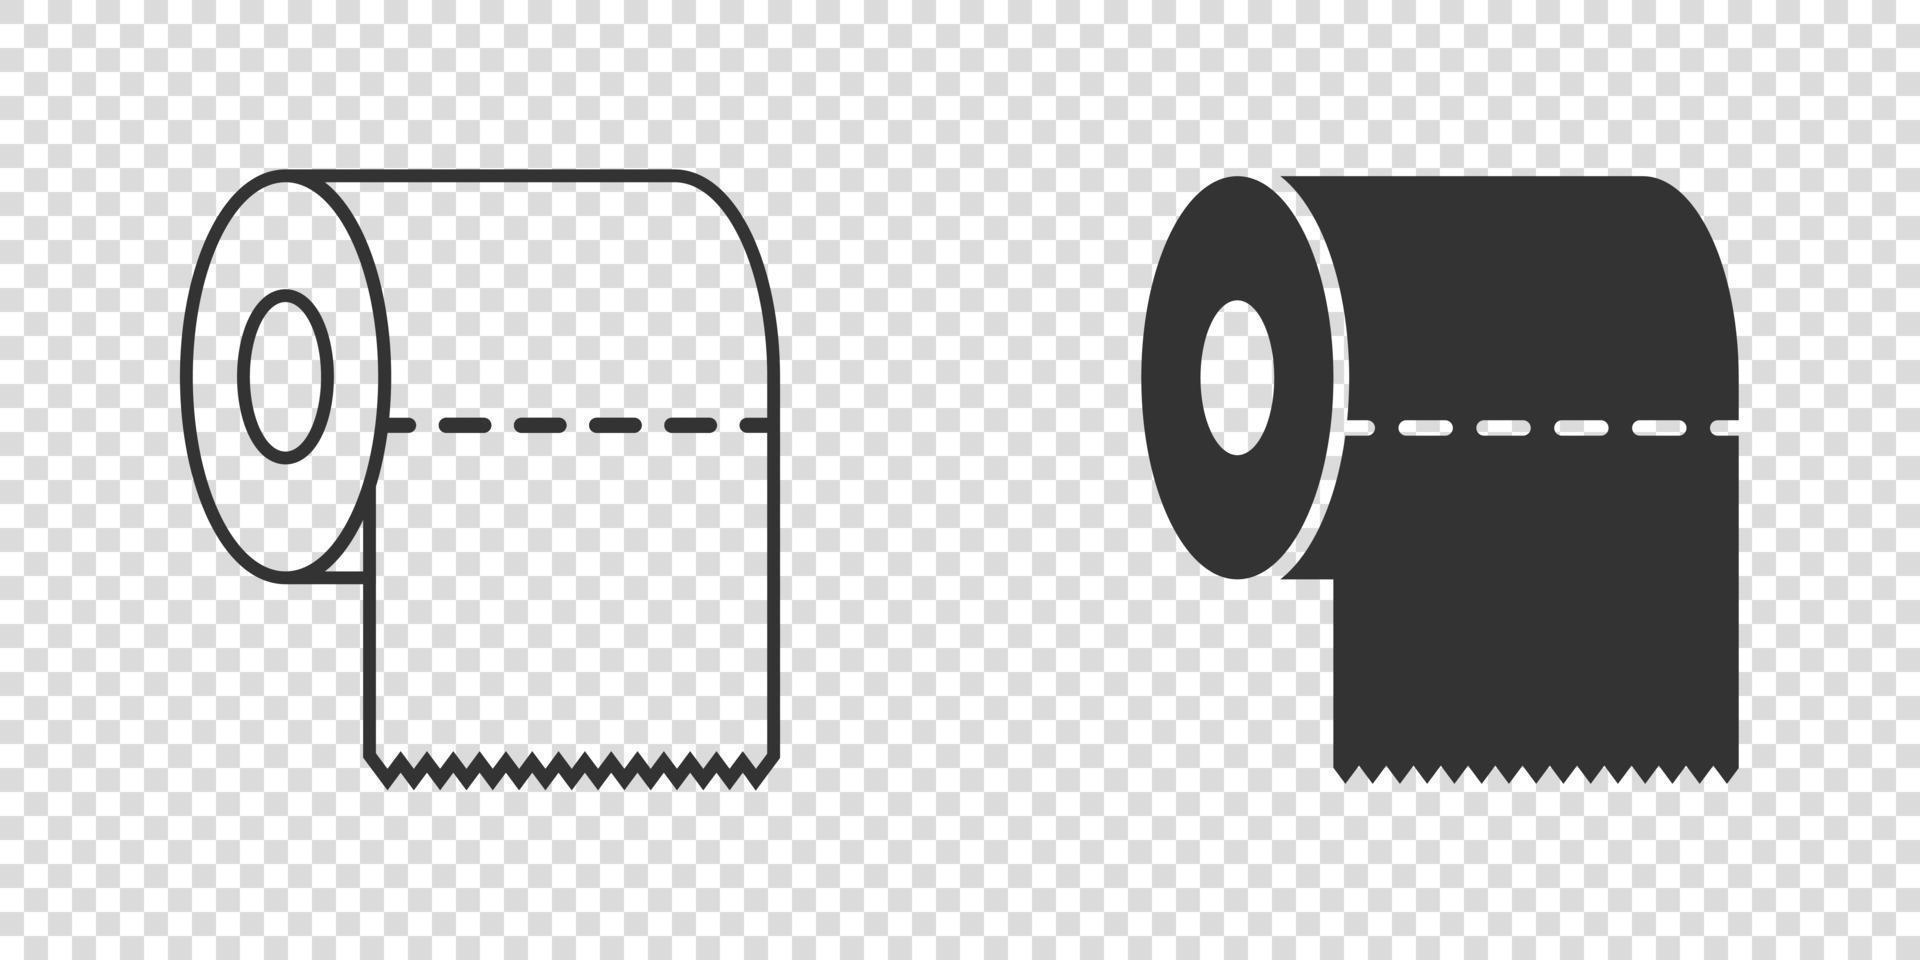 icône de papier toilette dans un style plat. illustration vectorielle propre sur fond isolé. concept d'entreprise de signe de toilettes wc. vecteur